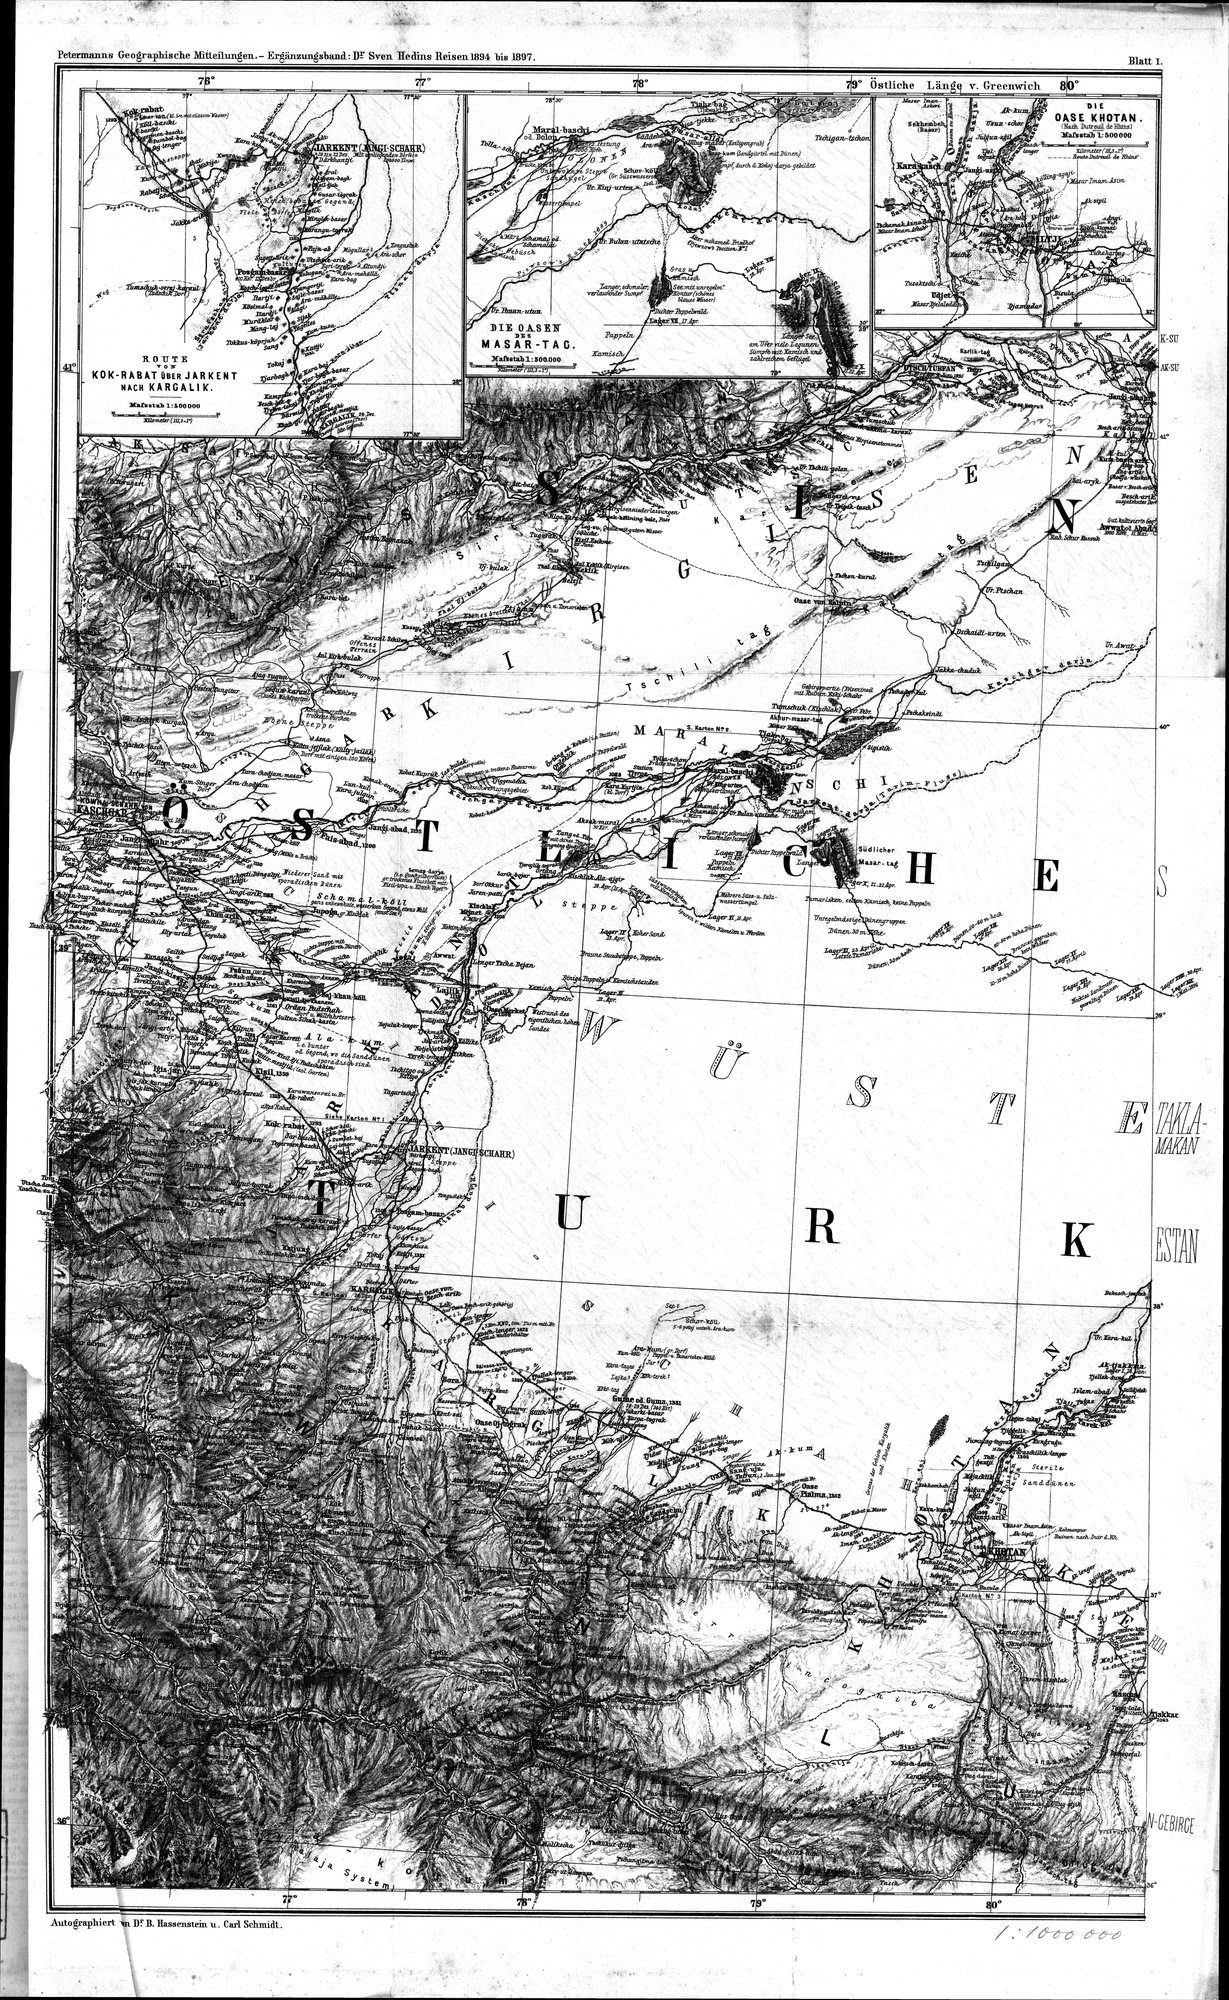 Die Geographische-Wissenschaftlichen Ergebnisse meiner Reisen in Zentralasien, 1894-1897 : vol.1 / Page 413 (Grayscale High Resolution Image)